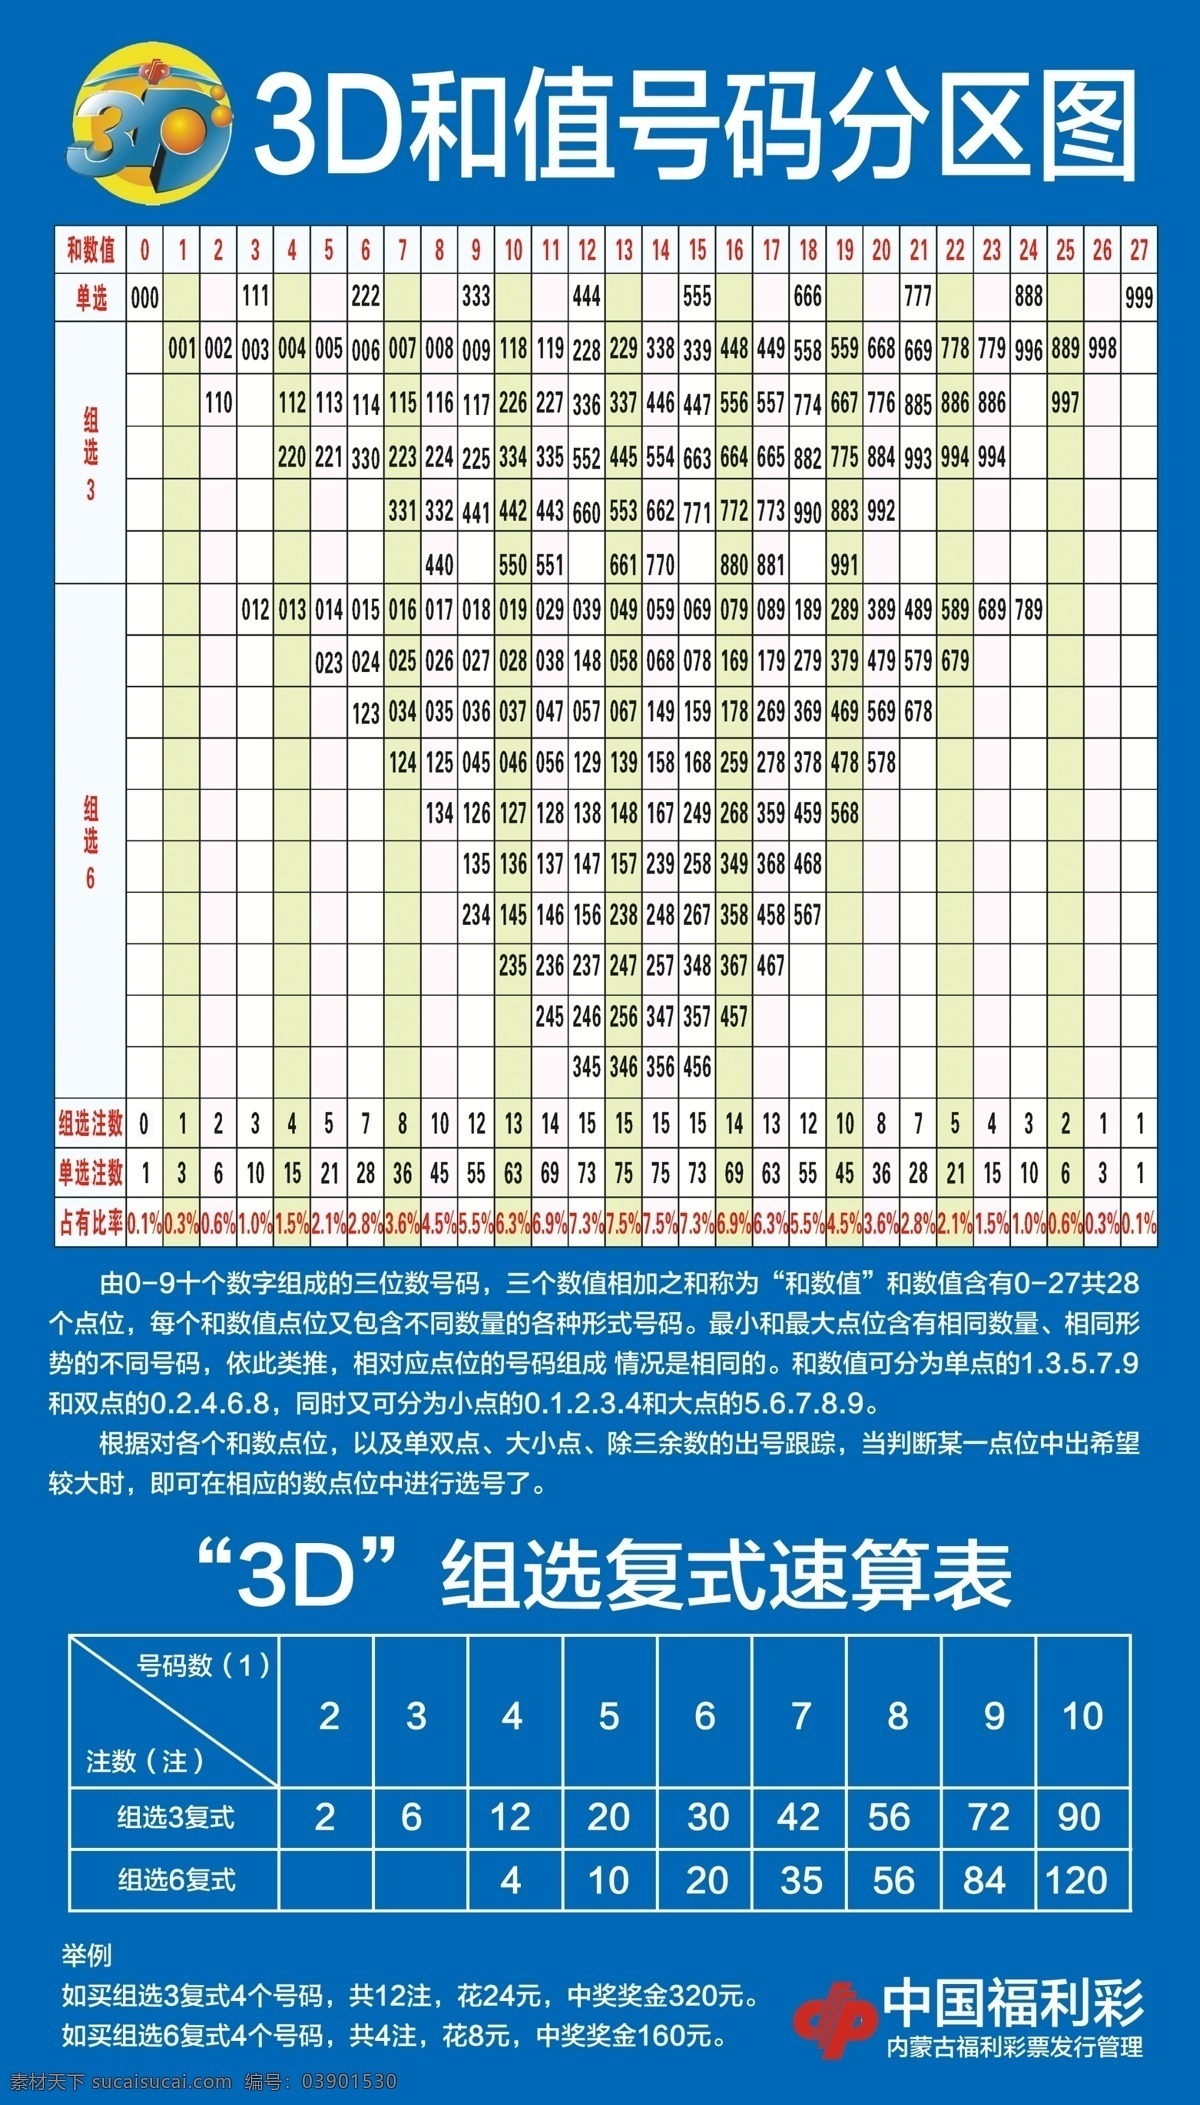 3d 值 号码 分区 图 3d游戏和值 中国福利彩票 福彩 游戏 和值表 彩民 彩票 其他设计 分层